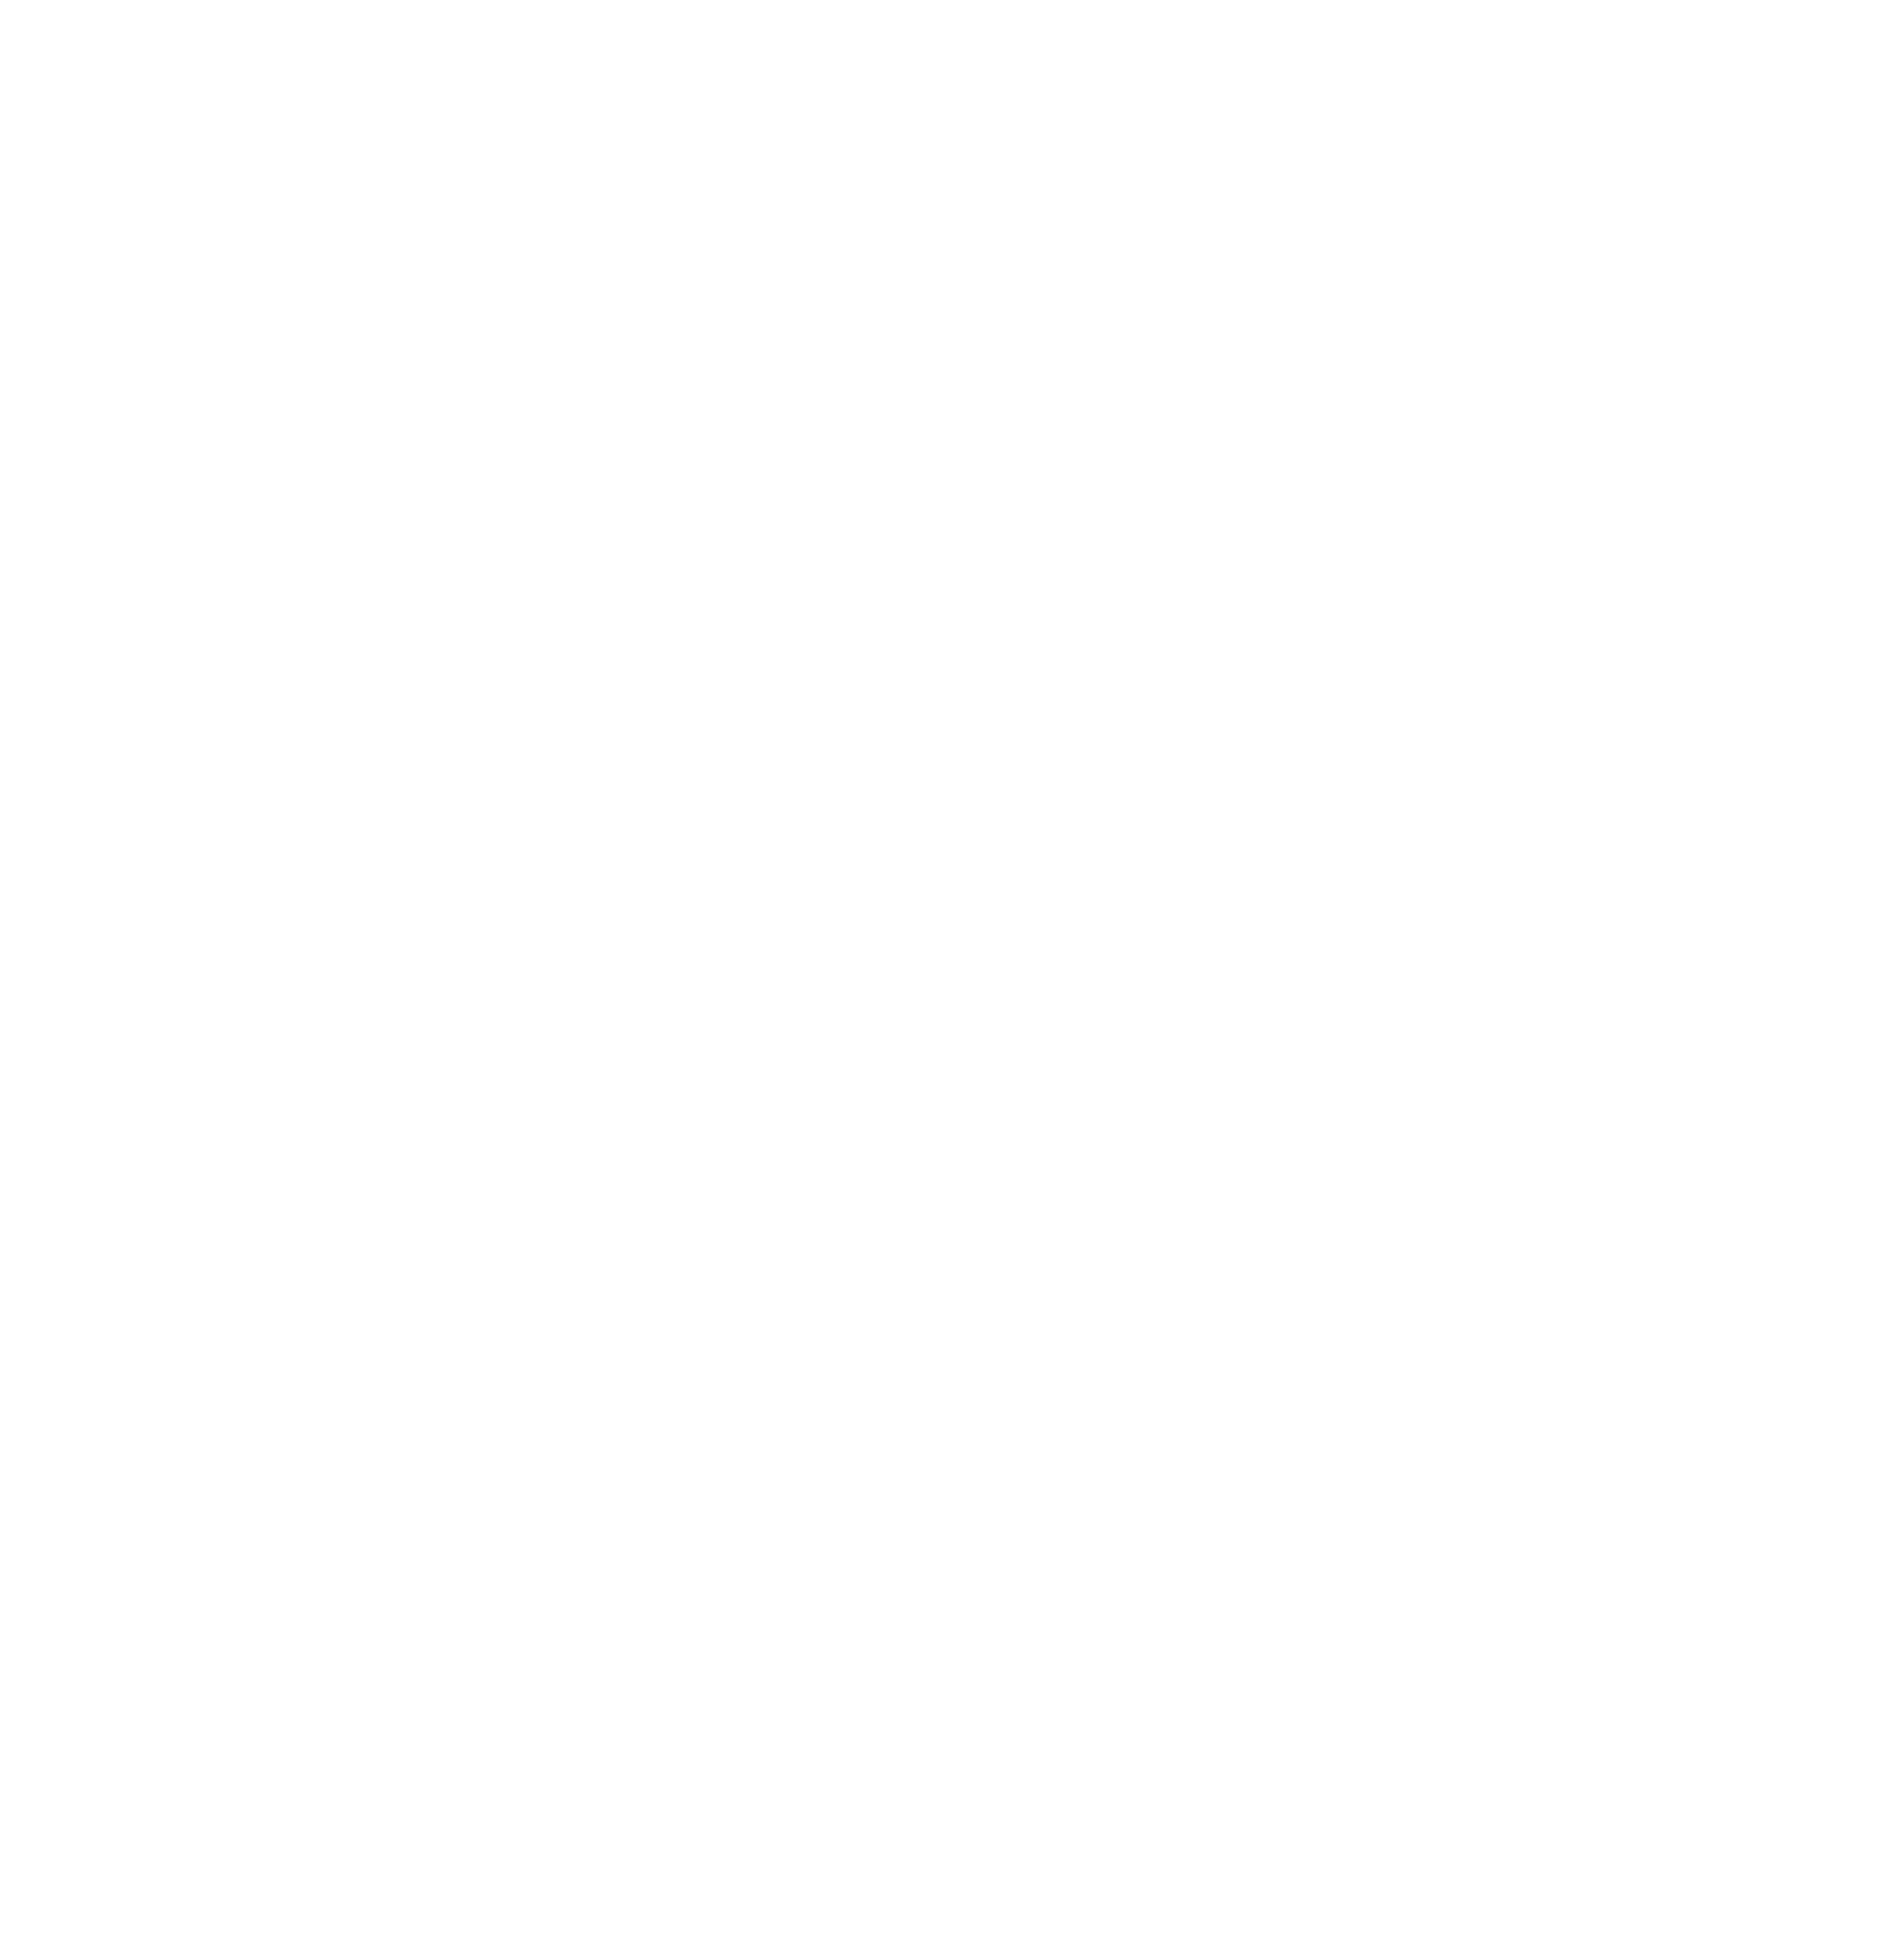 København Kommunes musikudvalg